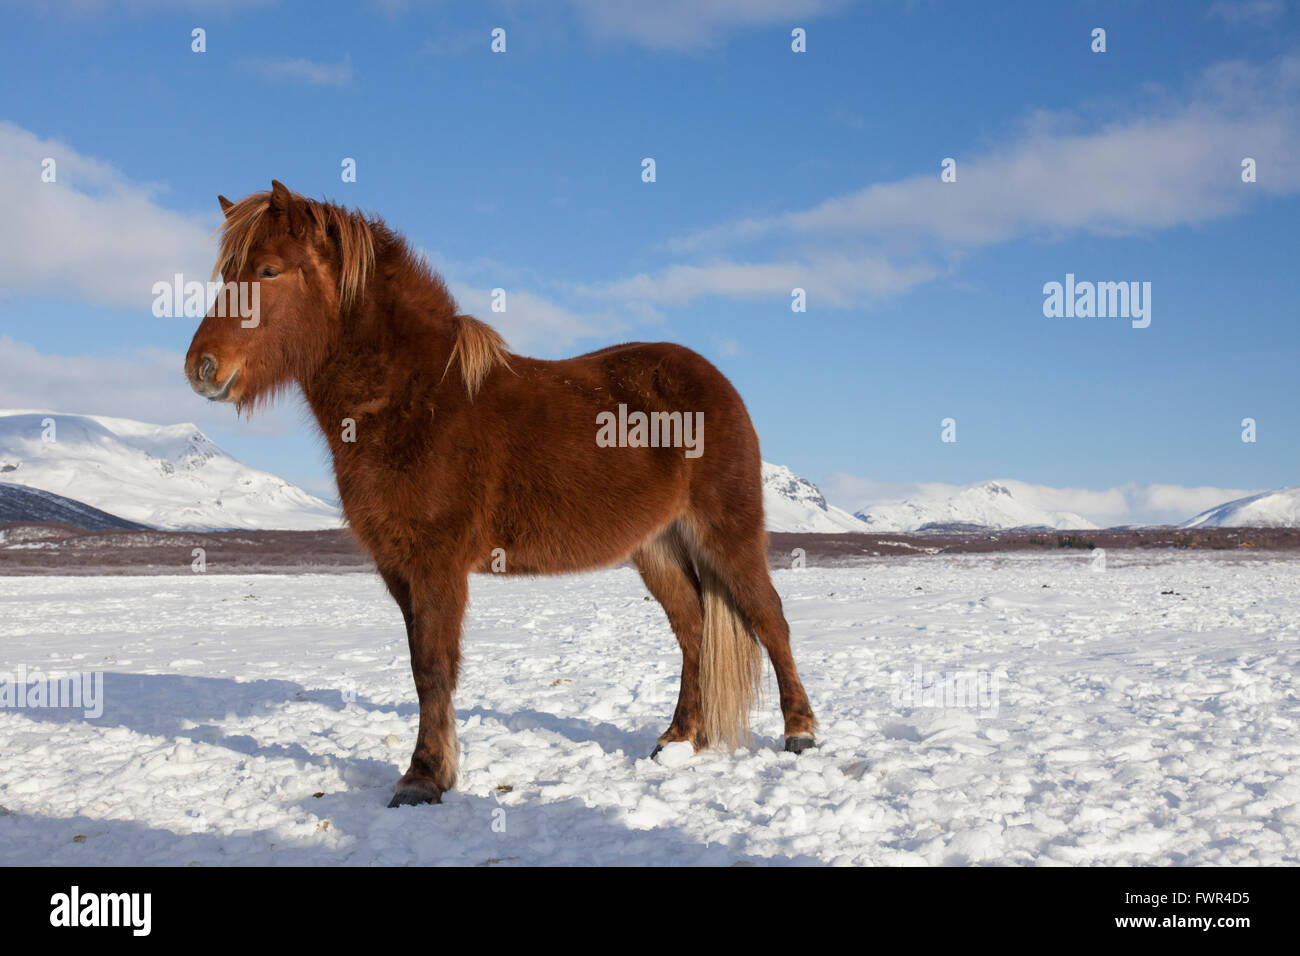 Icelandic horse (Equus ferus caballus / Equus Scandinavicus) in heavy winter coat in the snow on Iceland Stock Photo